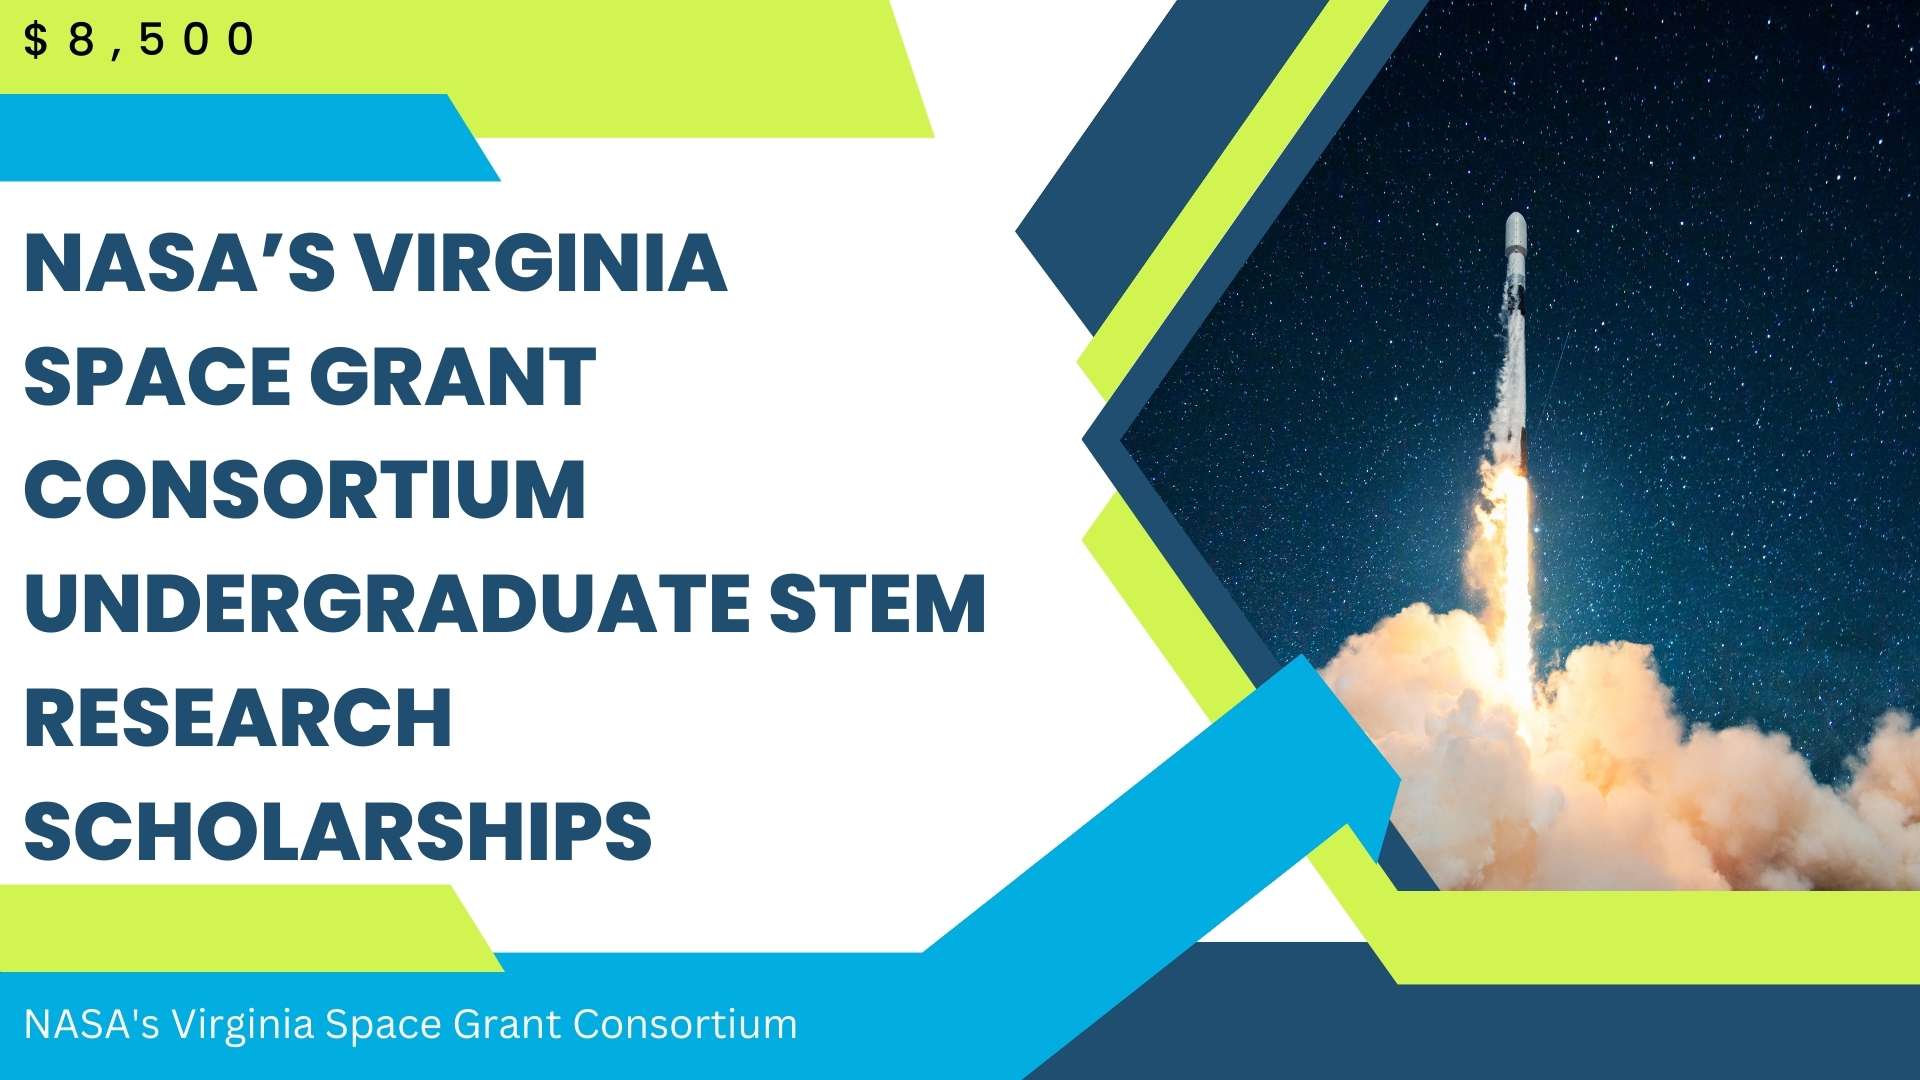 NASA's Virginia Space Grant Consortium Undergraduate STEM Research Scholarships